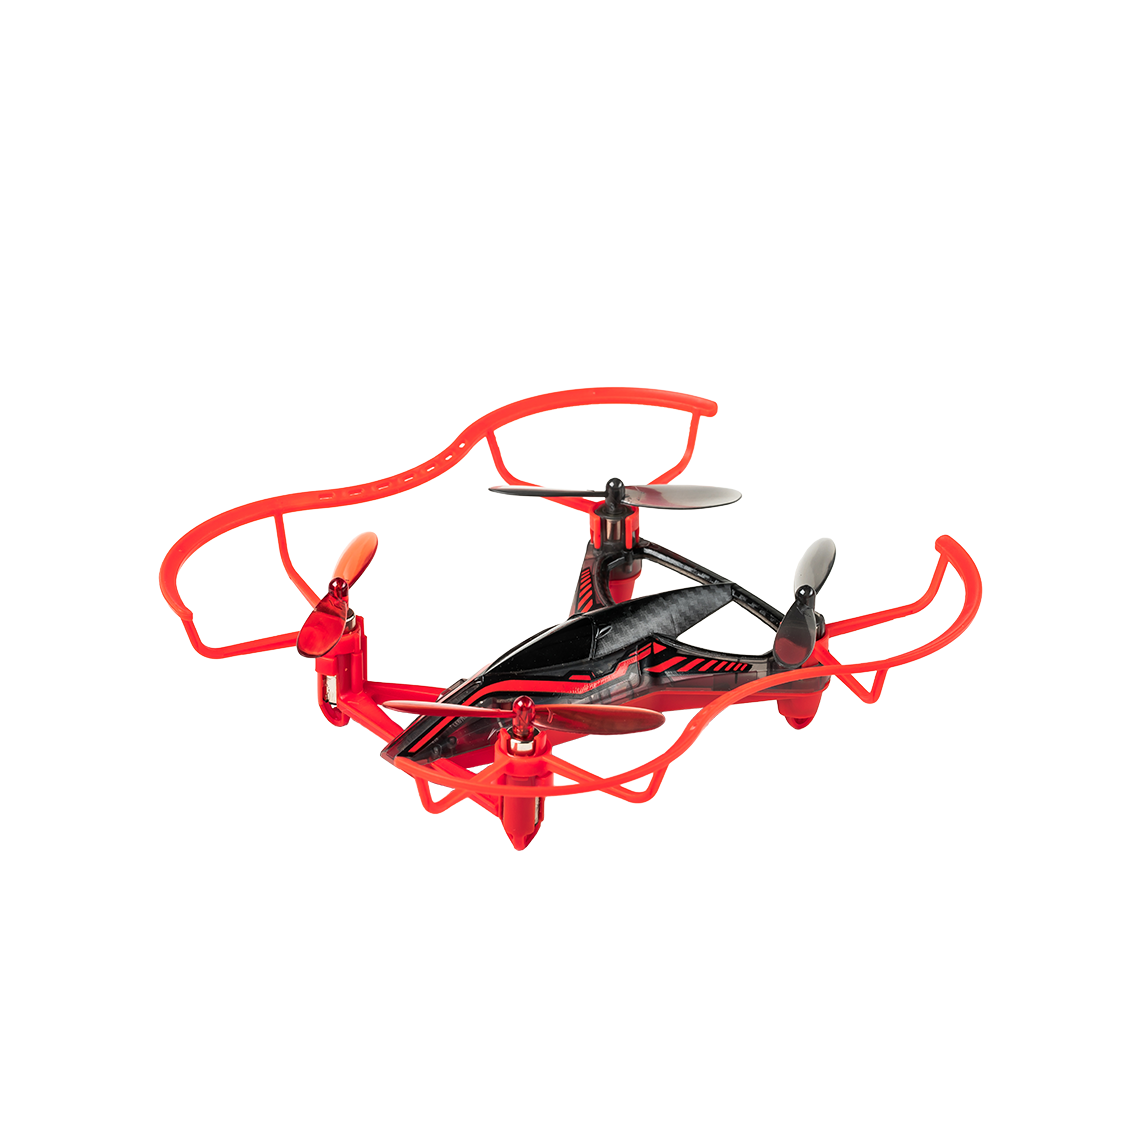  Silverlit - 84769 - Drone de course - Hyperdrone